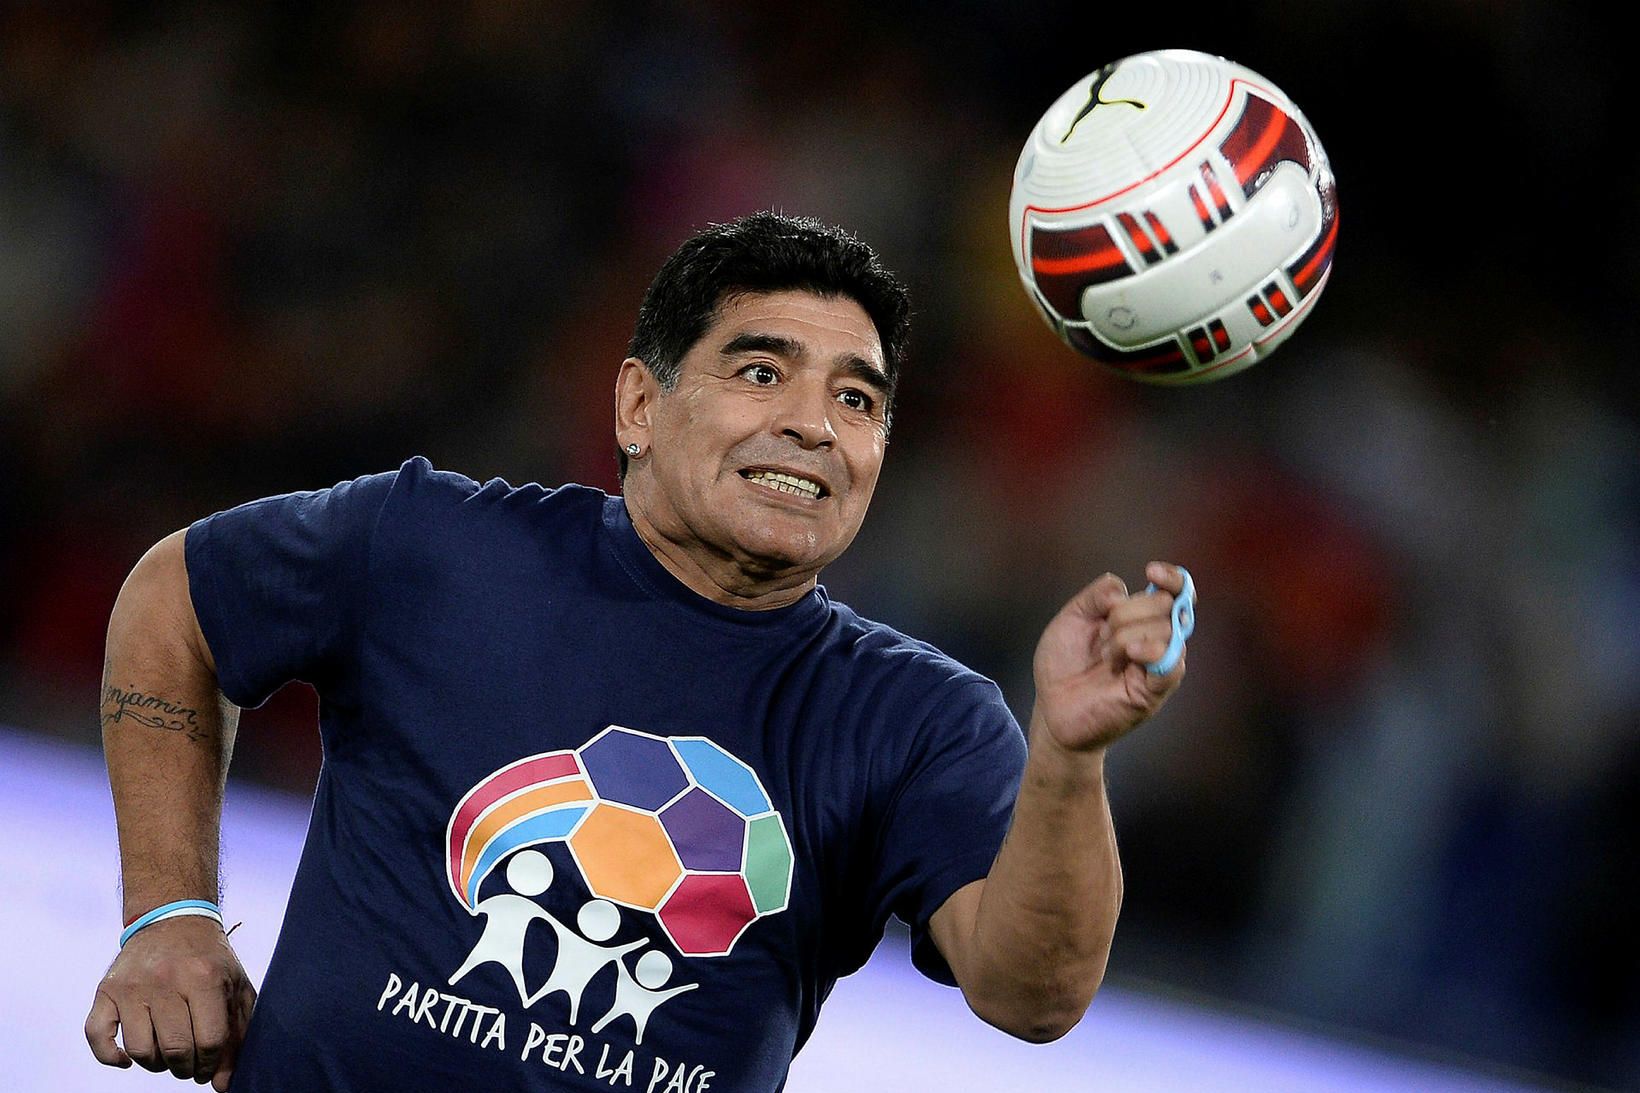 Diego Armando Maradona lést á heimili sínu í gær en …